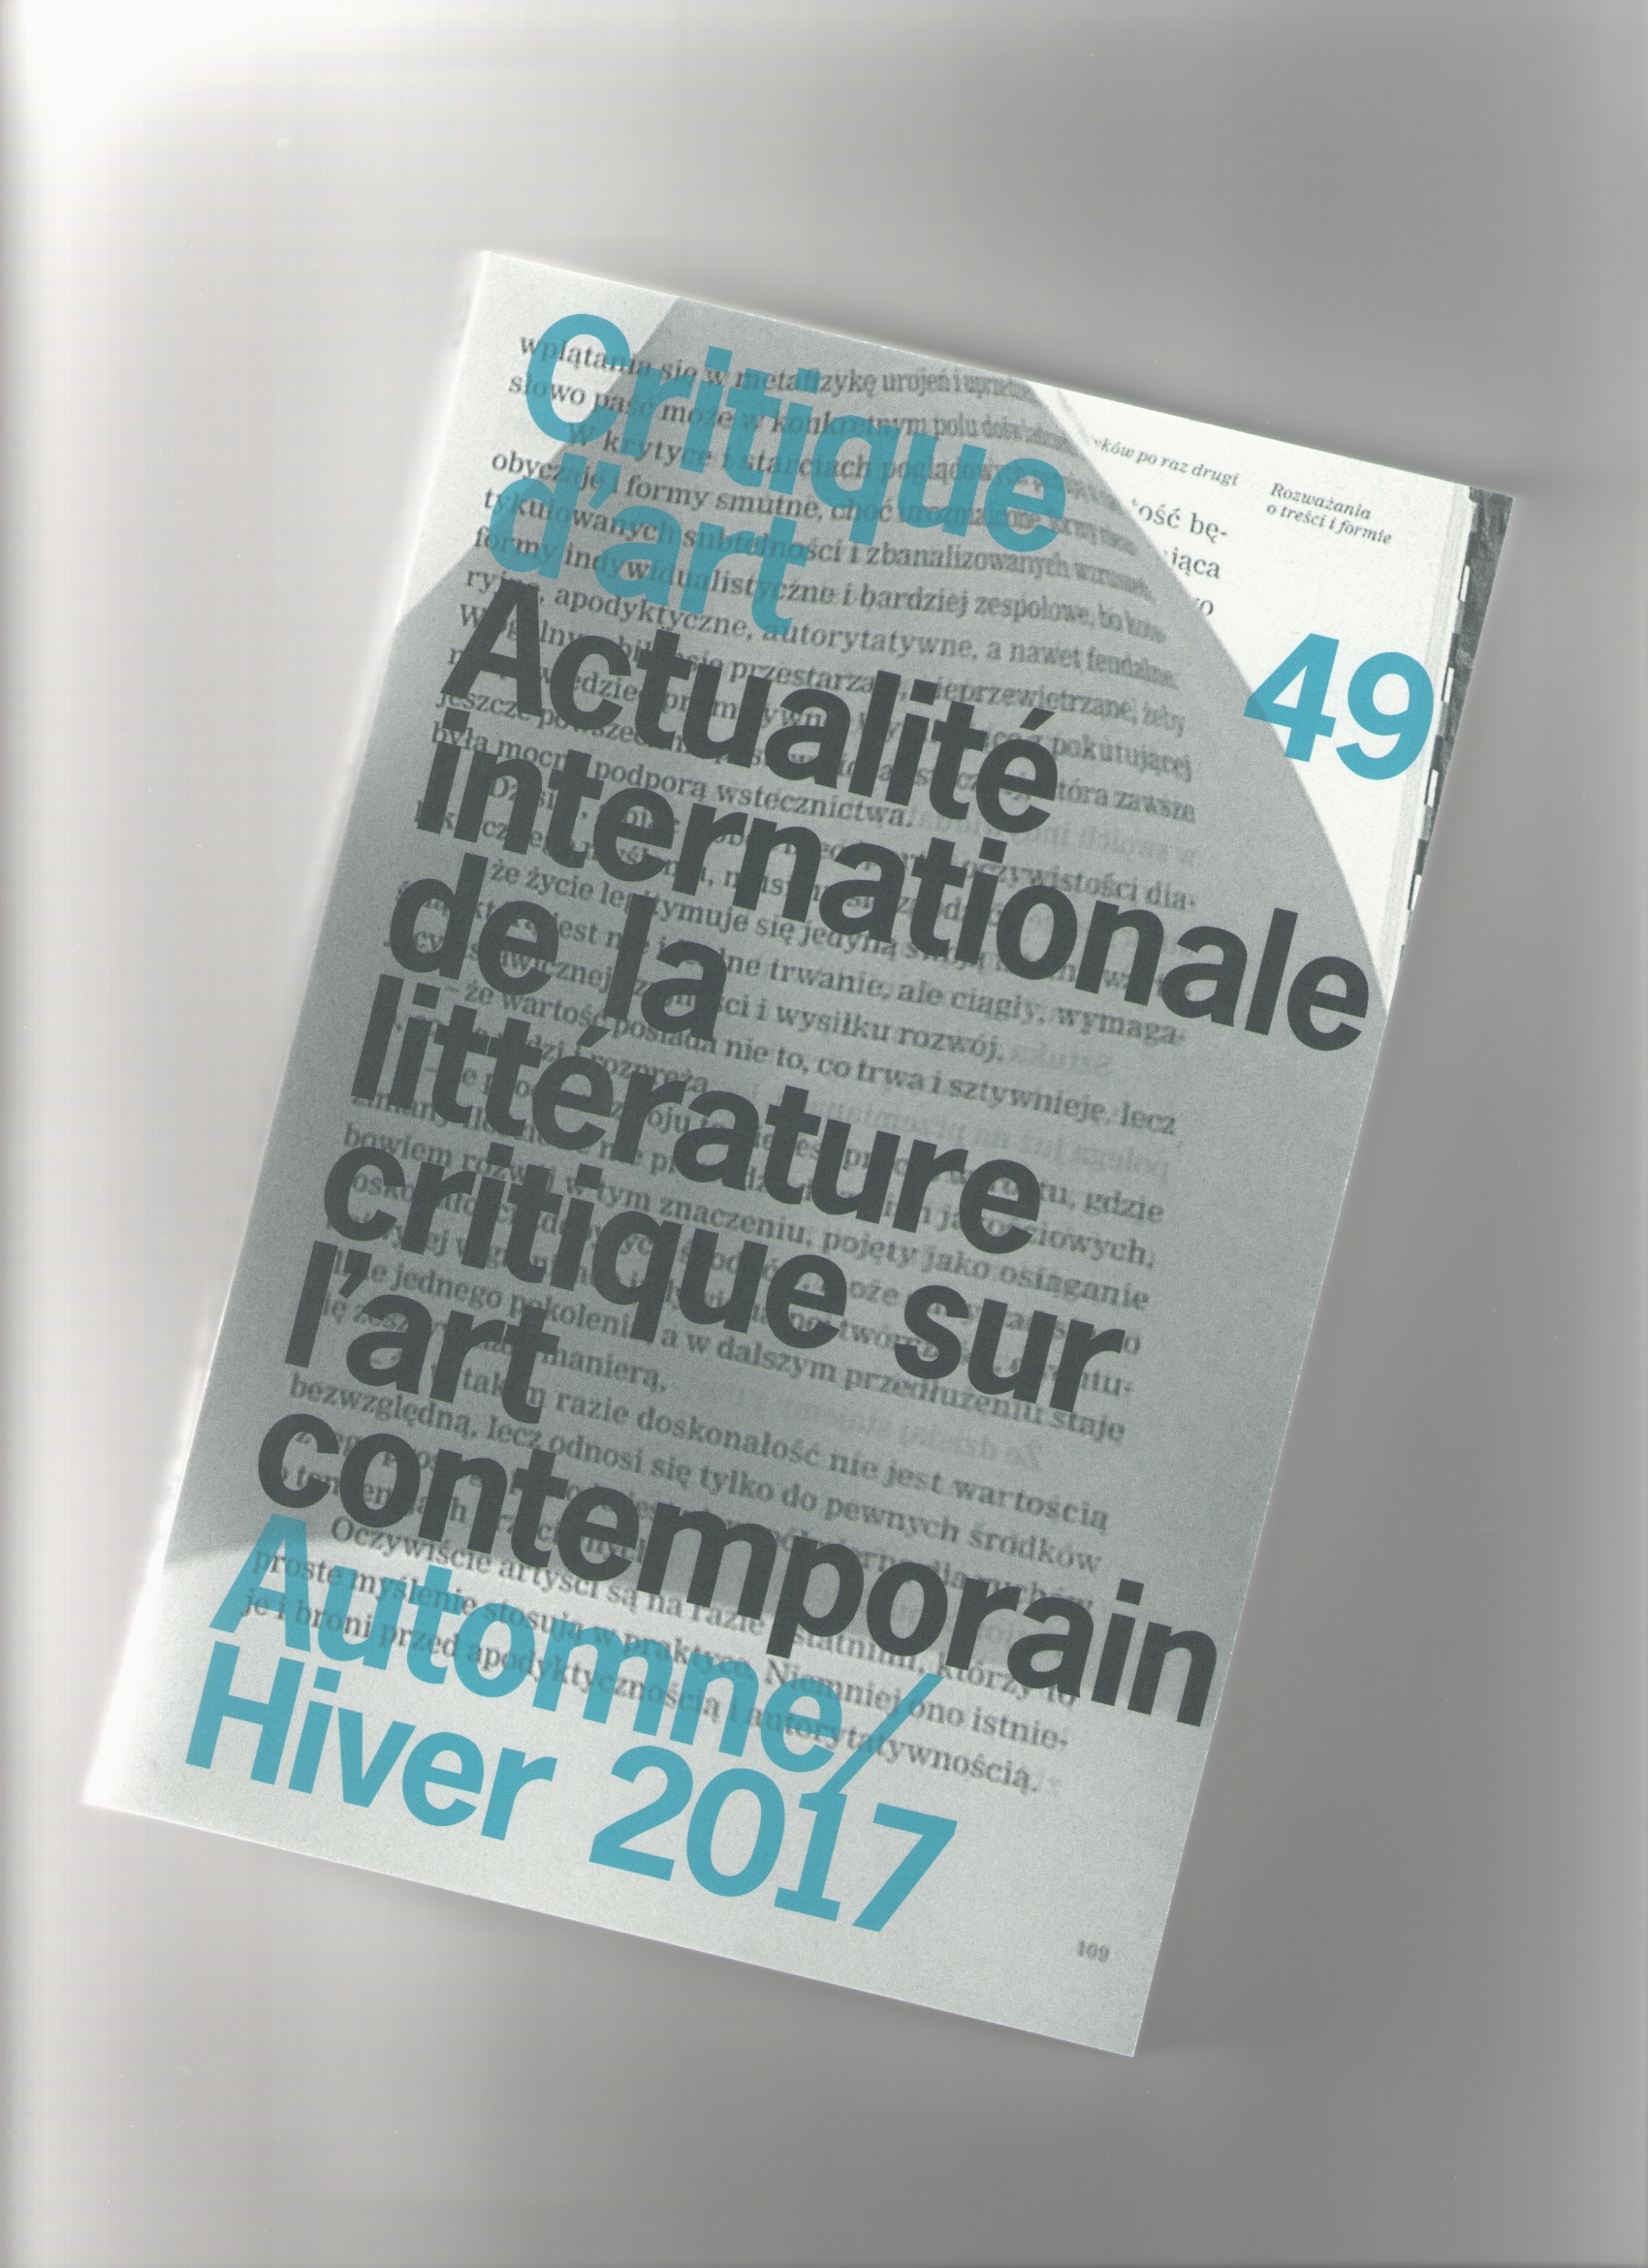 POINSOT, Jean-Marc (ed.) - Critique d'Art #49 Automne/Hiver 2017